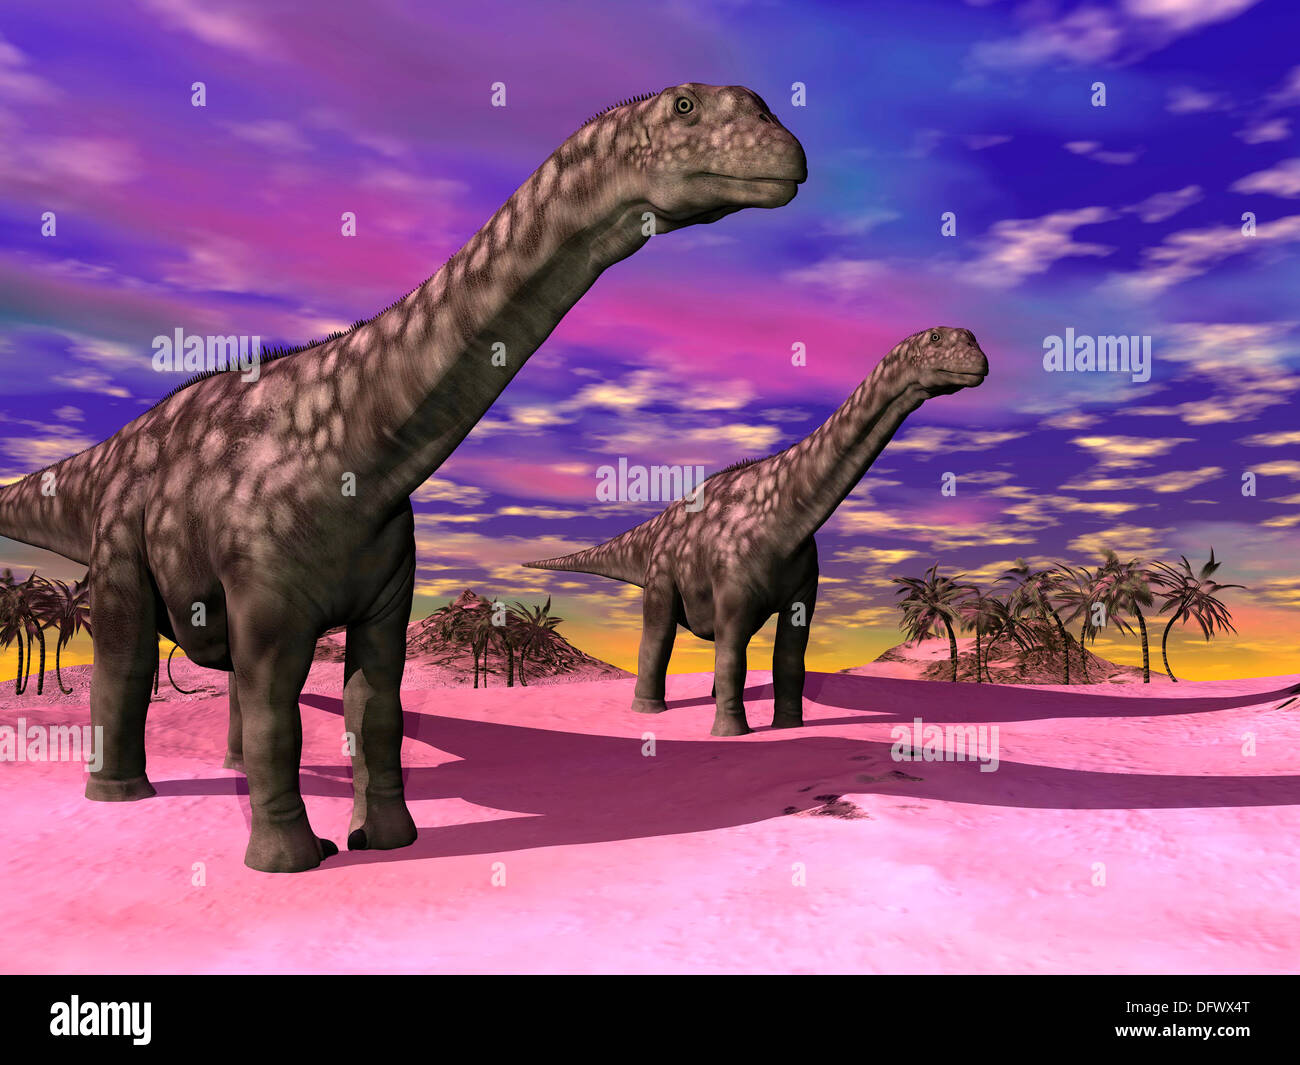 L'Argentinosaurus deux dinosaures dans un paysage préhistorique avec ciel coloré. Banque D'Images